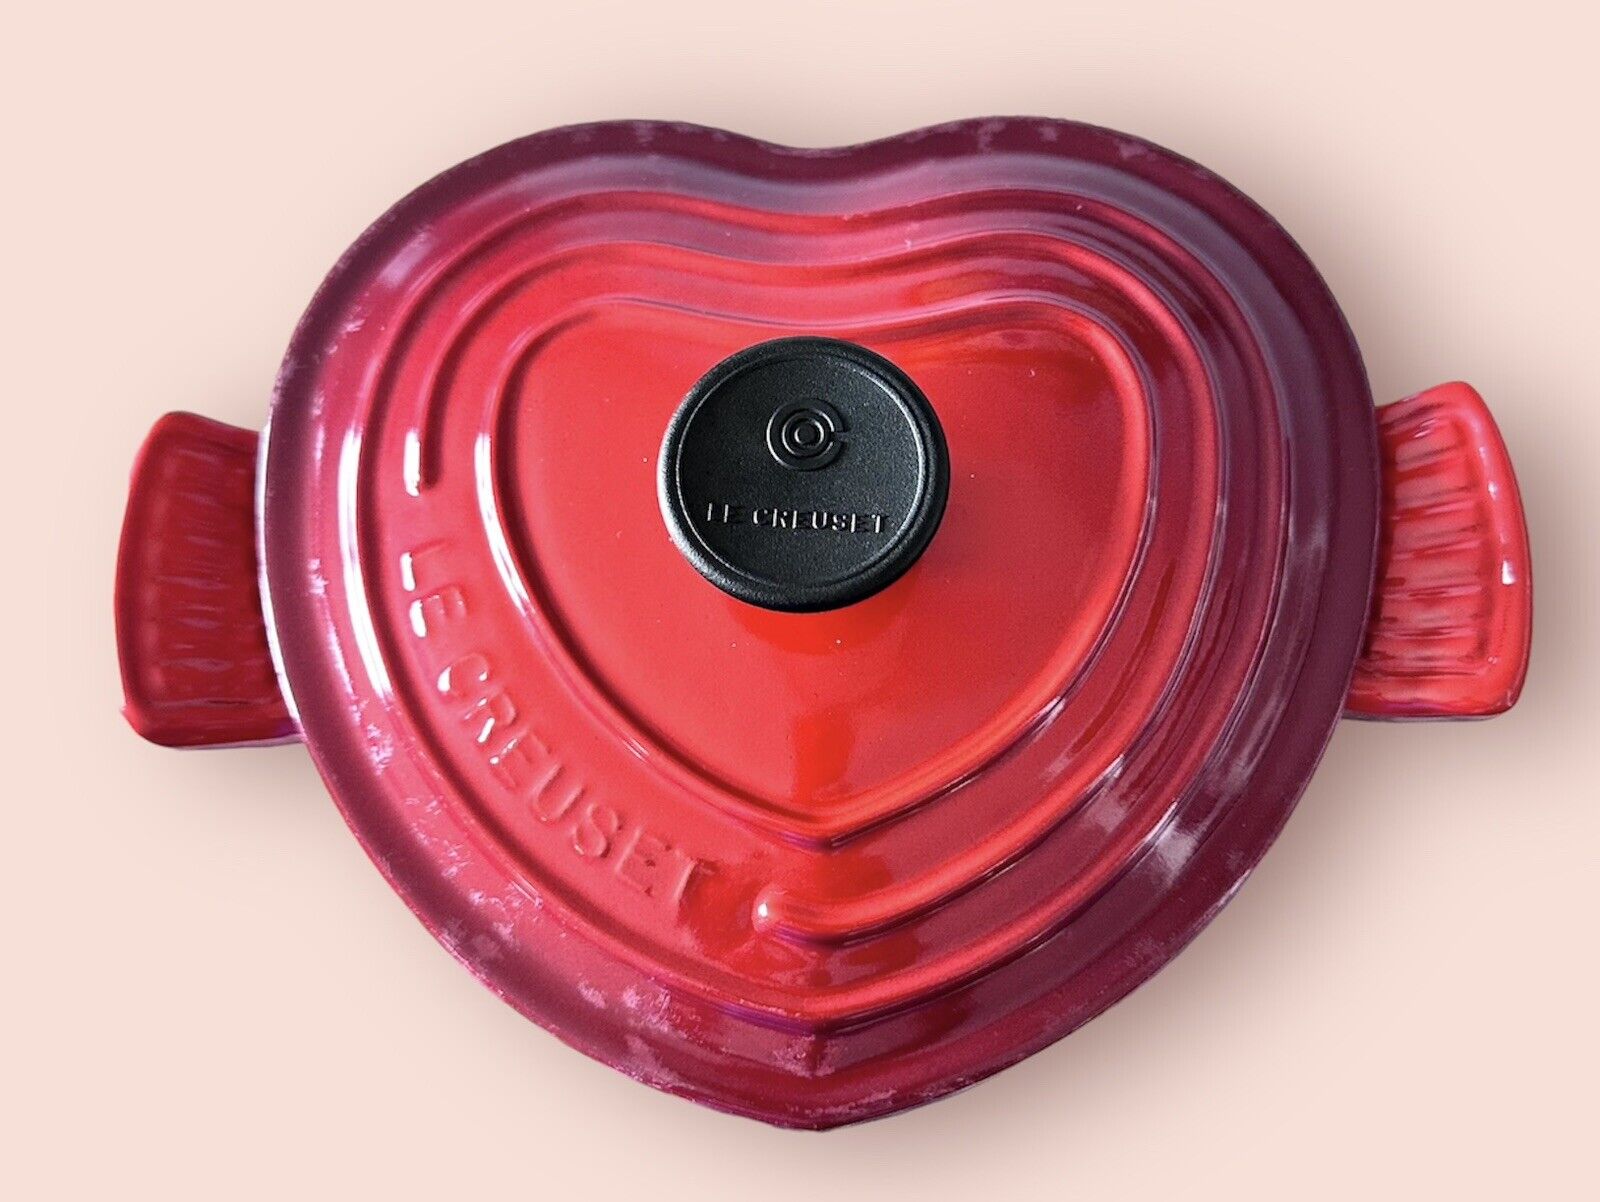 LeCreuset France Heart Shaped Cocotte Enamel Cast Iron Dutch Oven 2L Cerise Red